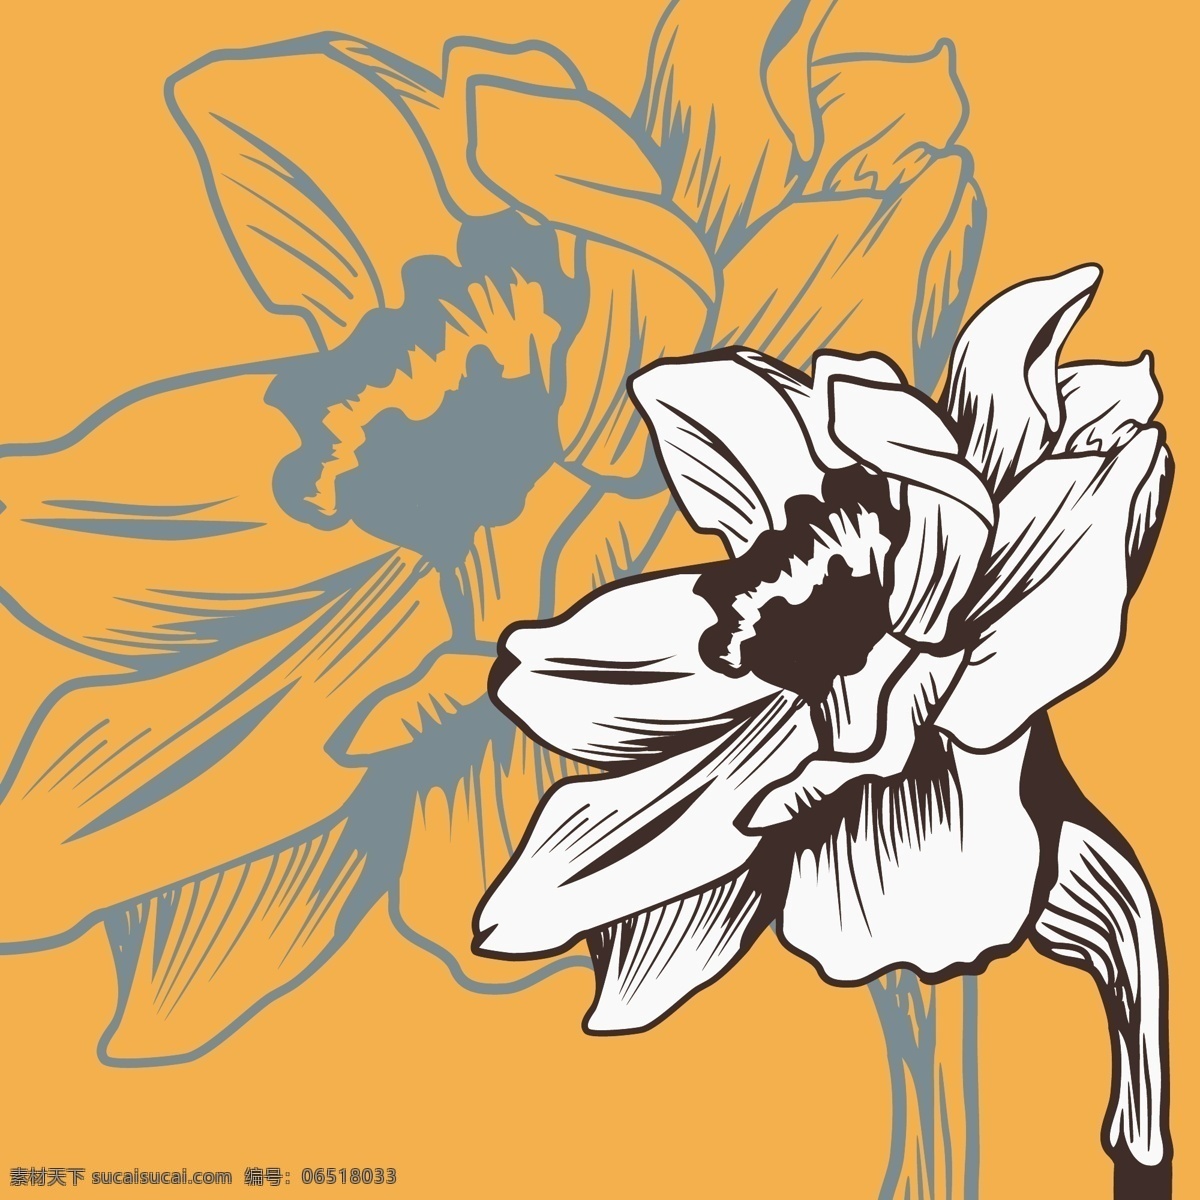 手绘花卉背景 手绘 花卉 花朵 背景 卡通图案 底纹边框 矢量素材 橙色